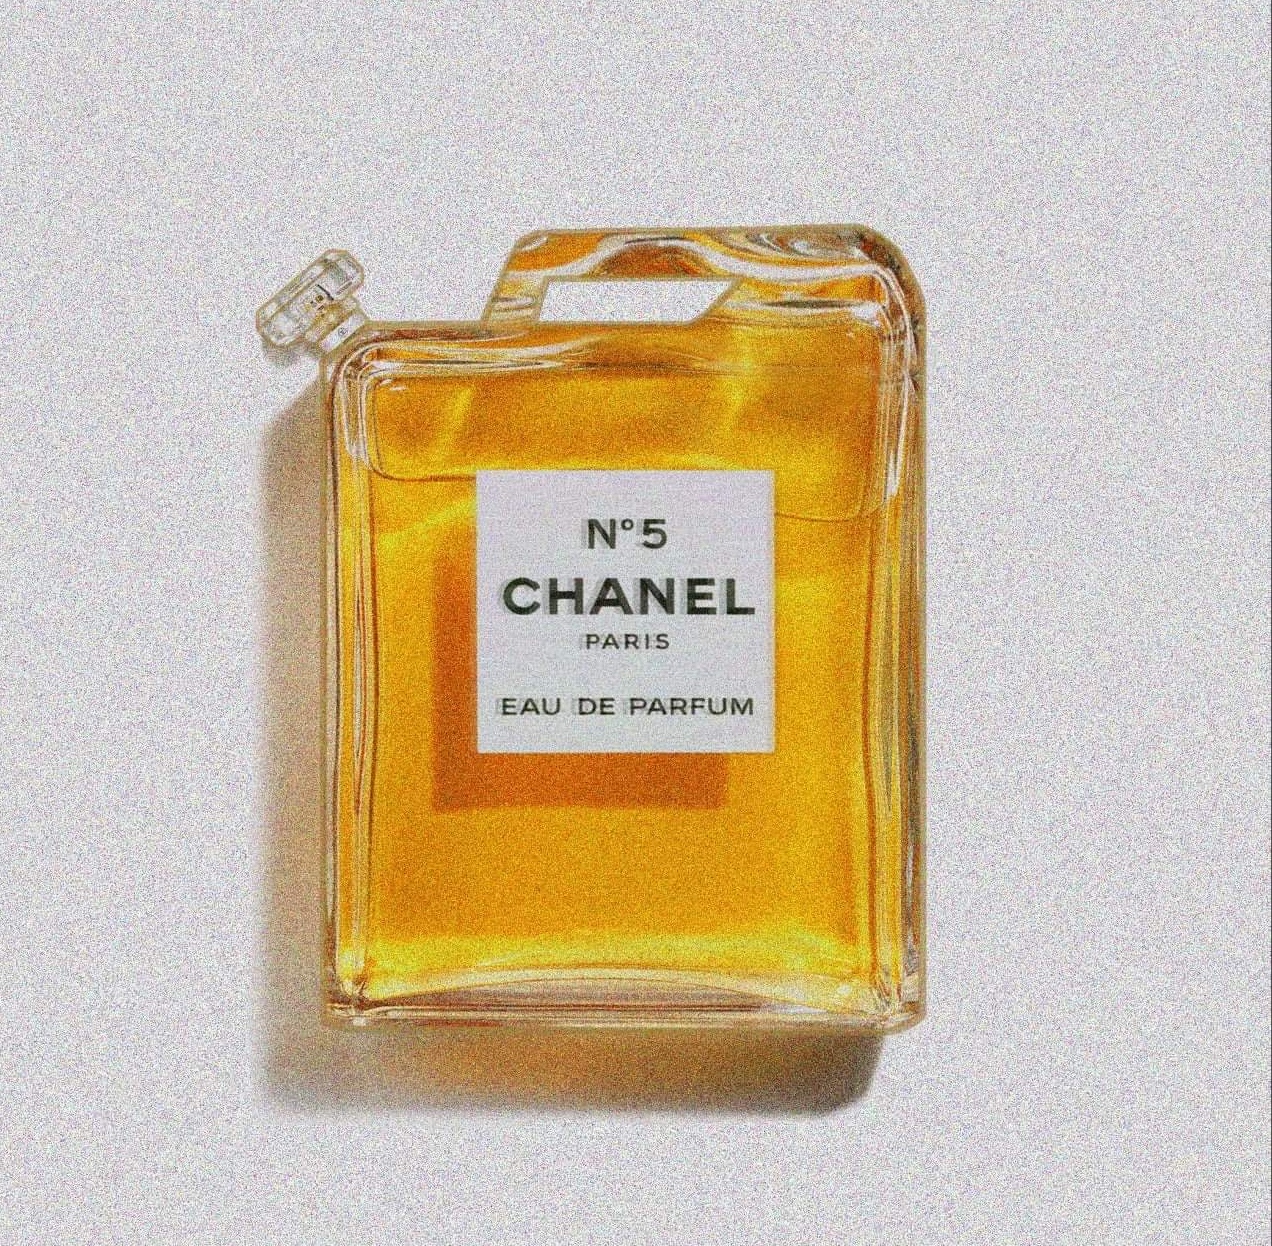 Chanel eau de parfum et le prix de l'essence.